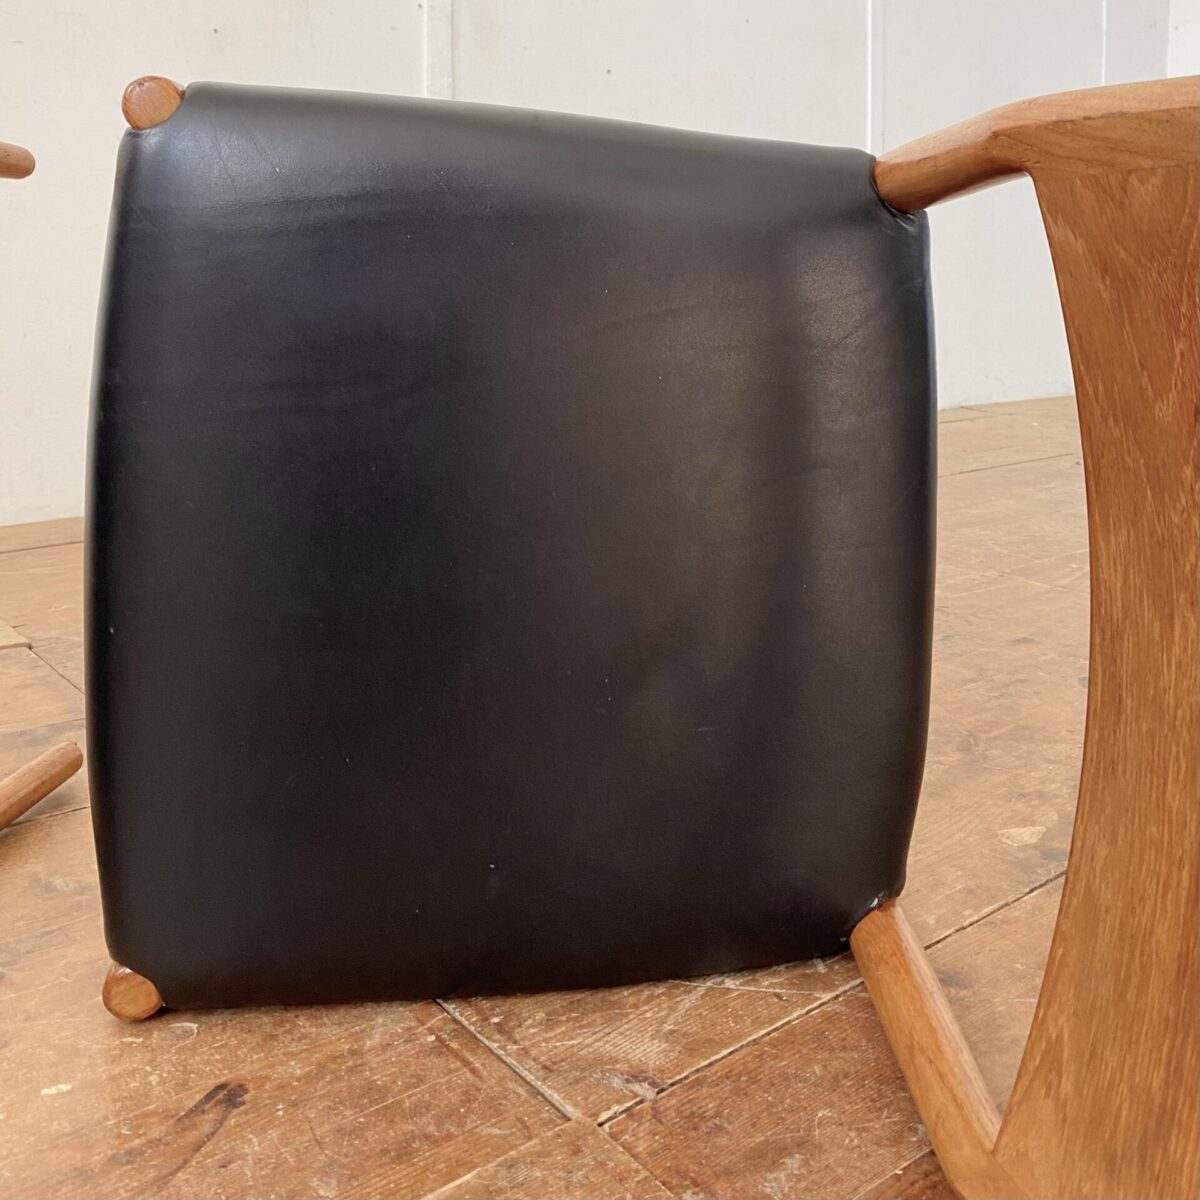 Deuxieme.shop midcentury Teak Esszimmer Stühle aus den 60er Jahren von Arne Vodder, Modell 418. Sitzhöhe ca. 47cm. Die Stühle sind in stabilem Zustand, der schlimmste Kratzer auf dem einen Polster ist dokumentiert. 